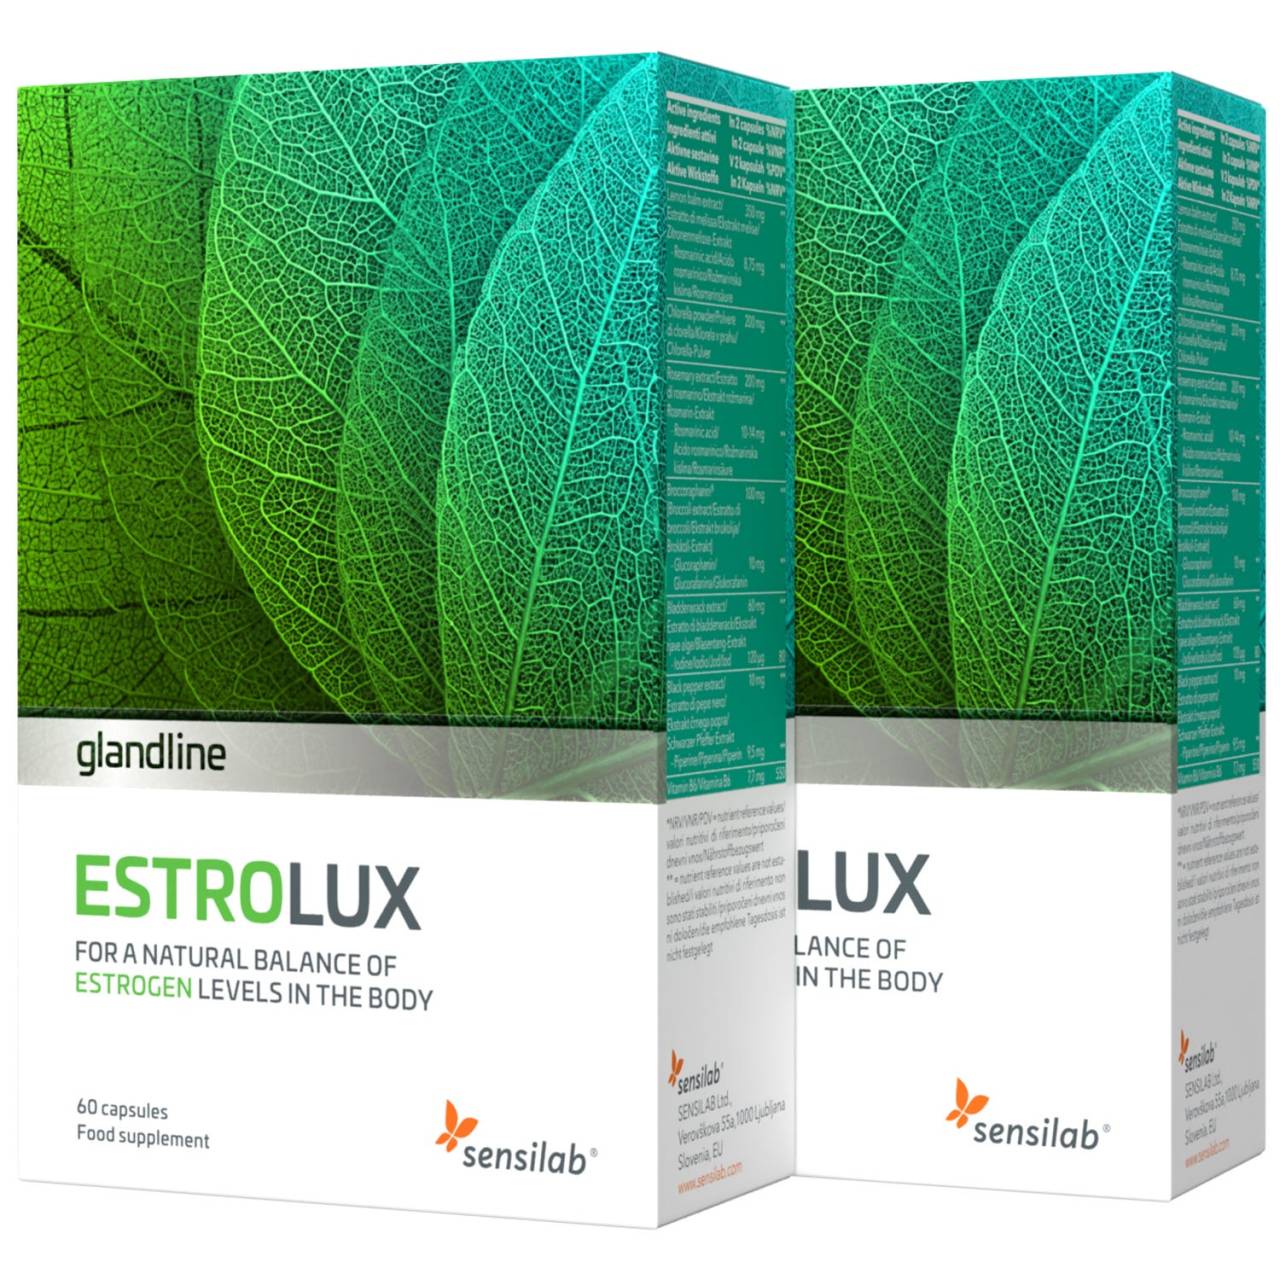 EstroLux 2-Pack | Til hormonel balance og østrogen detox | 100% naturlige - 7 stærke ingredienser (uden soja) | 2x60 kapsler til 60 dage | Sensilab.